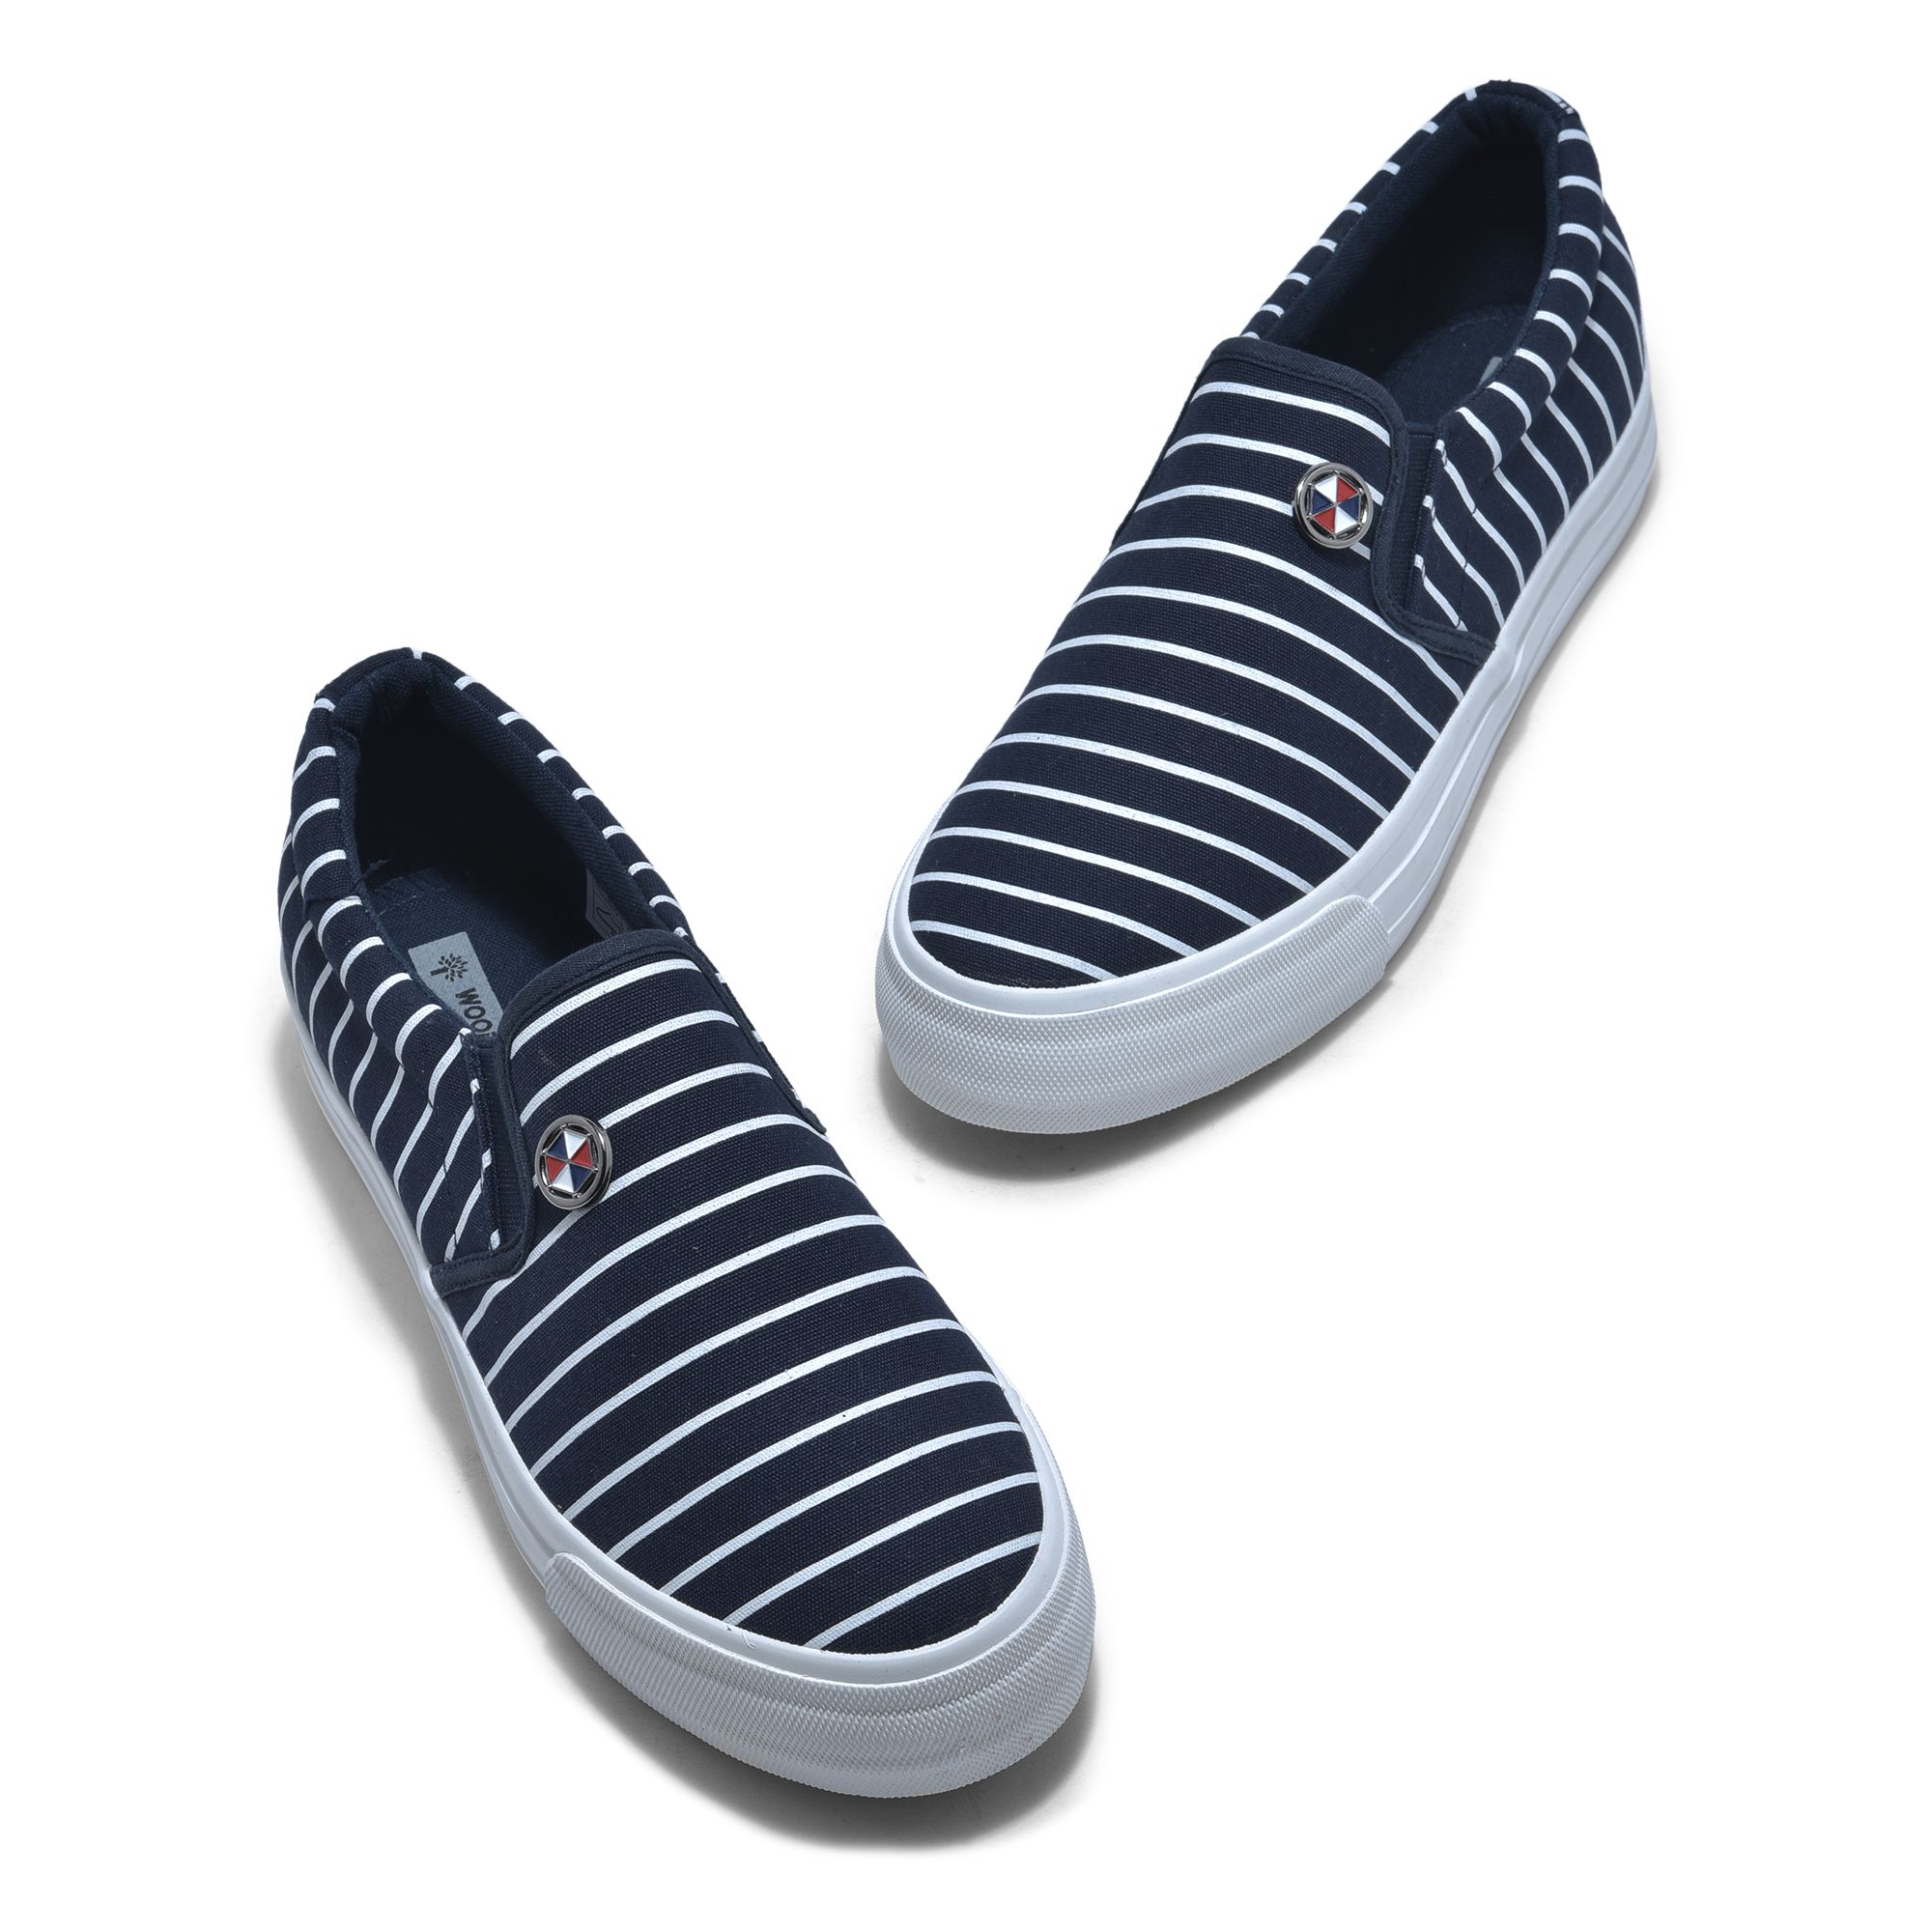 Blue slip-on shoes for women